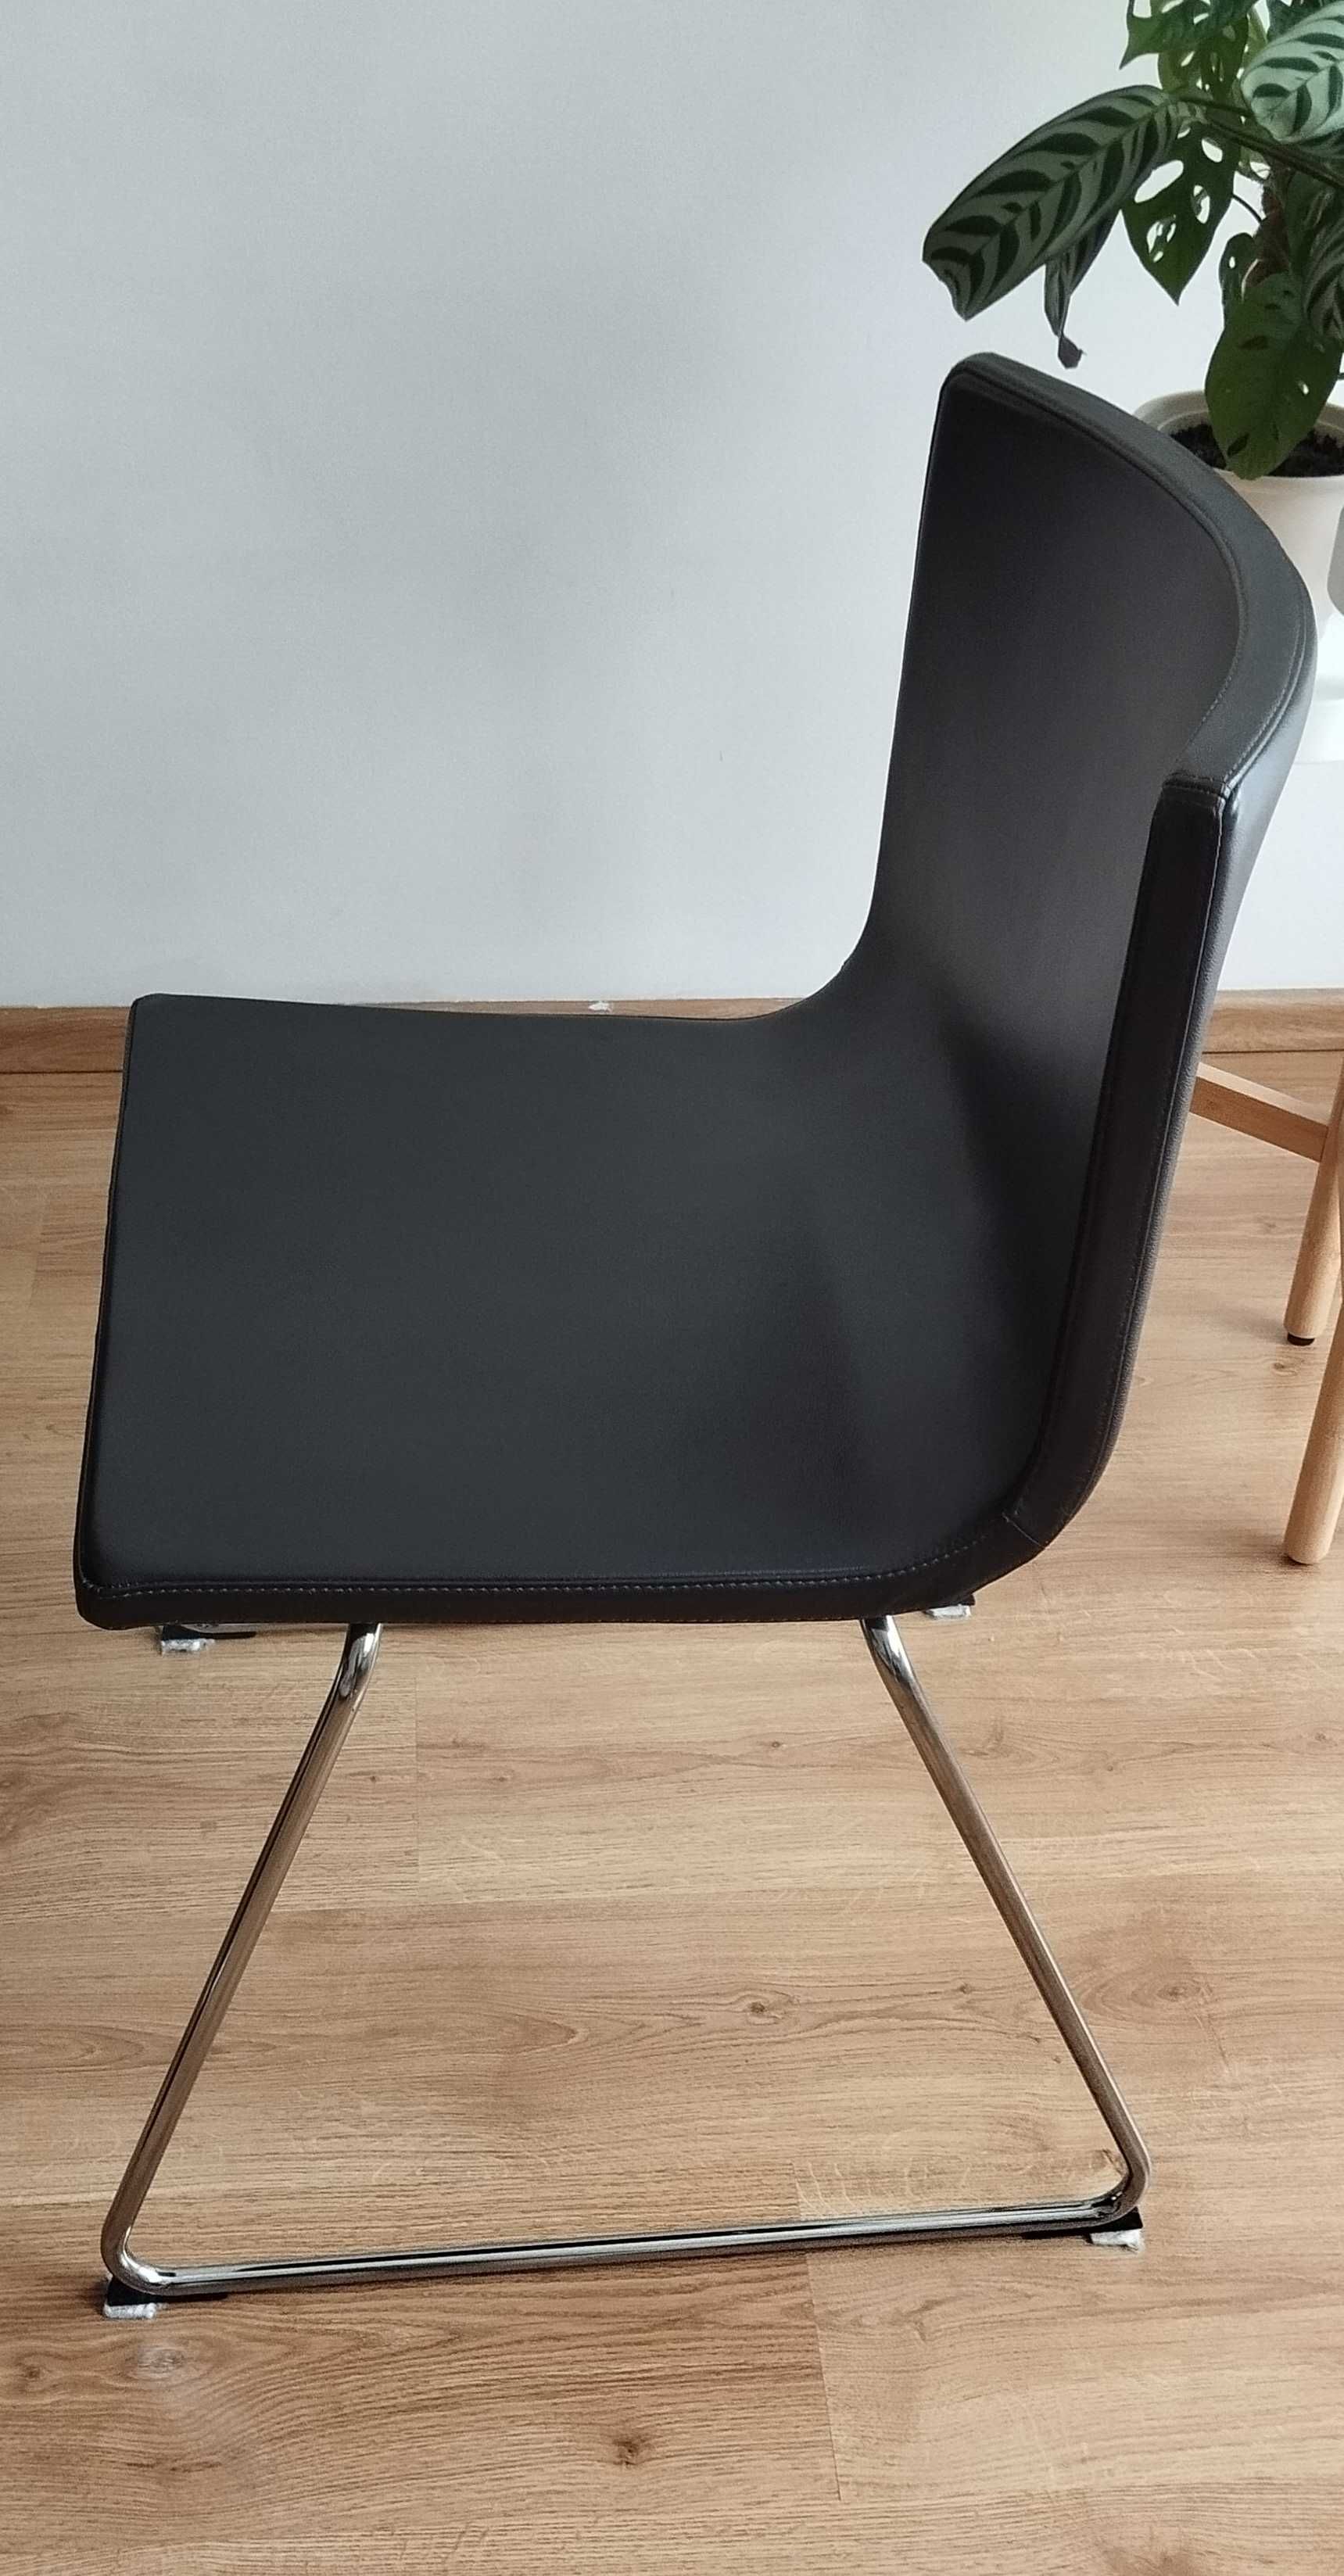 IKEA stół okrągły BJURSTA krzesła skóra komplet